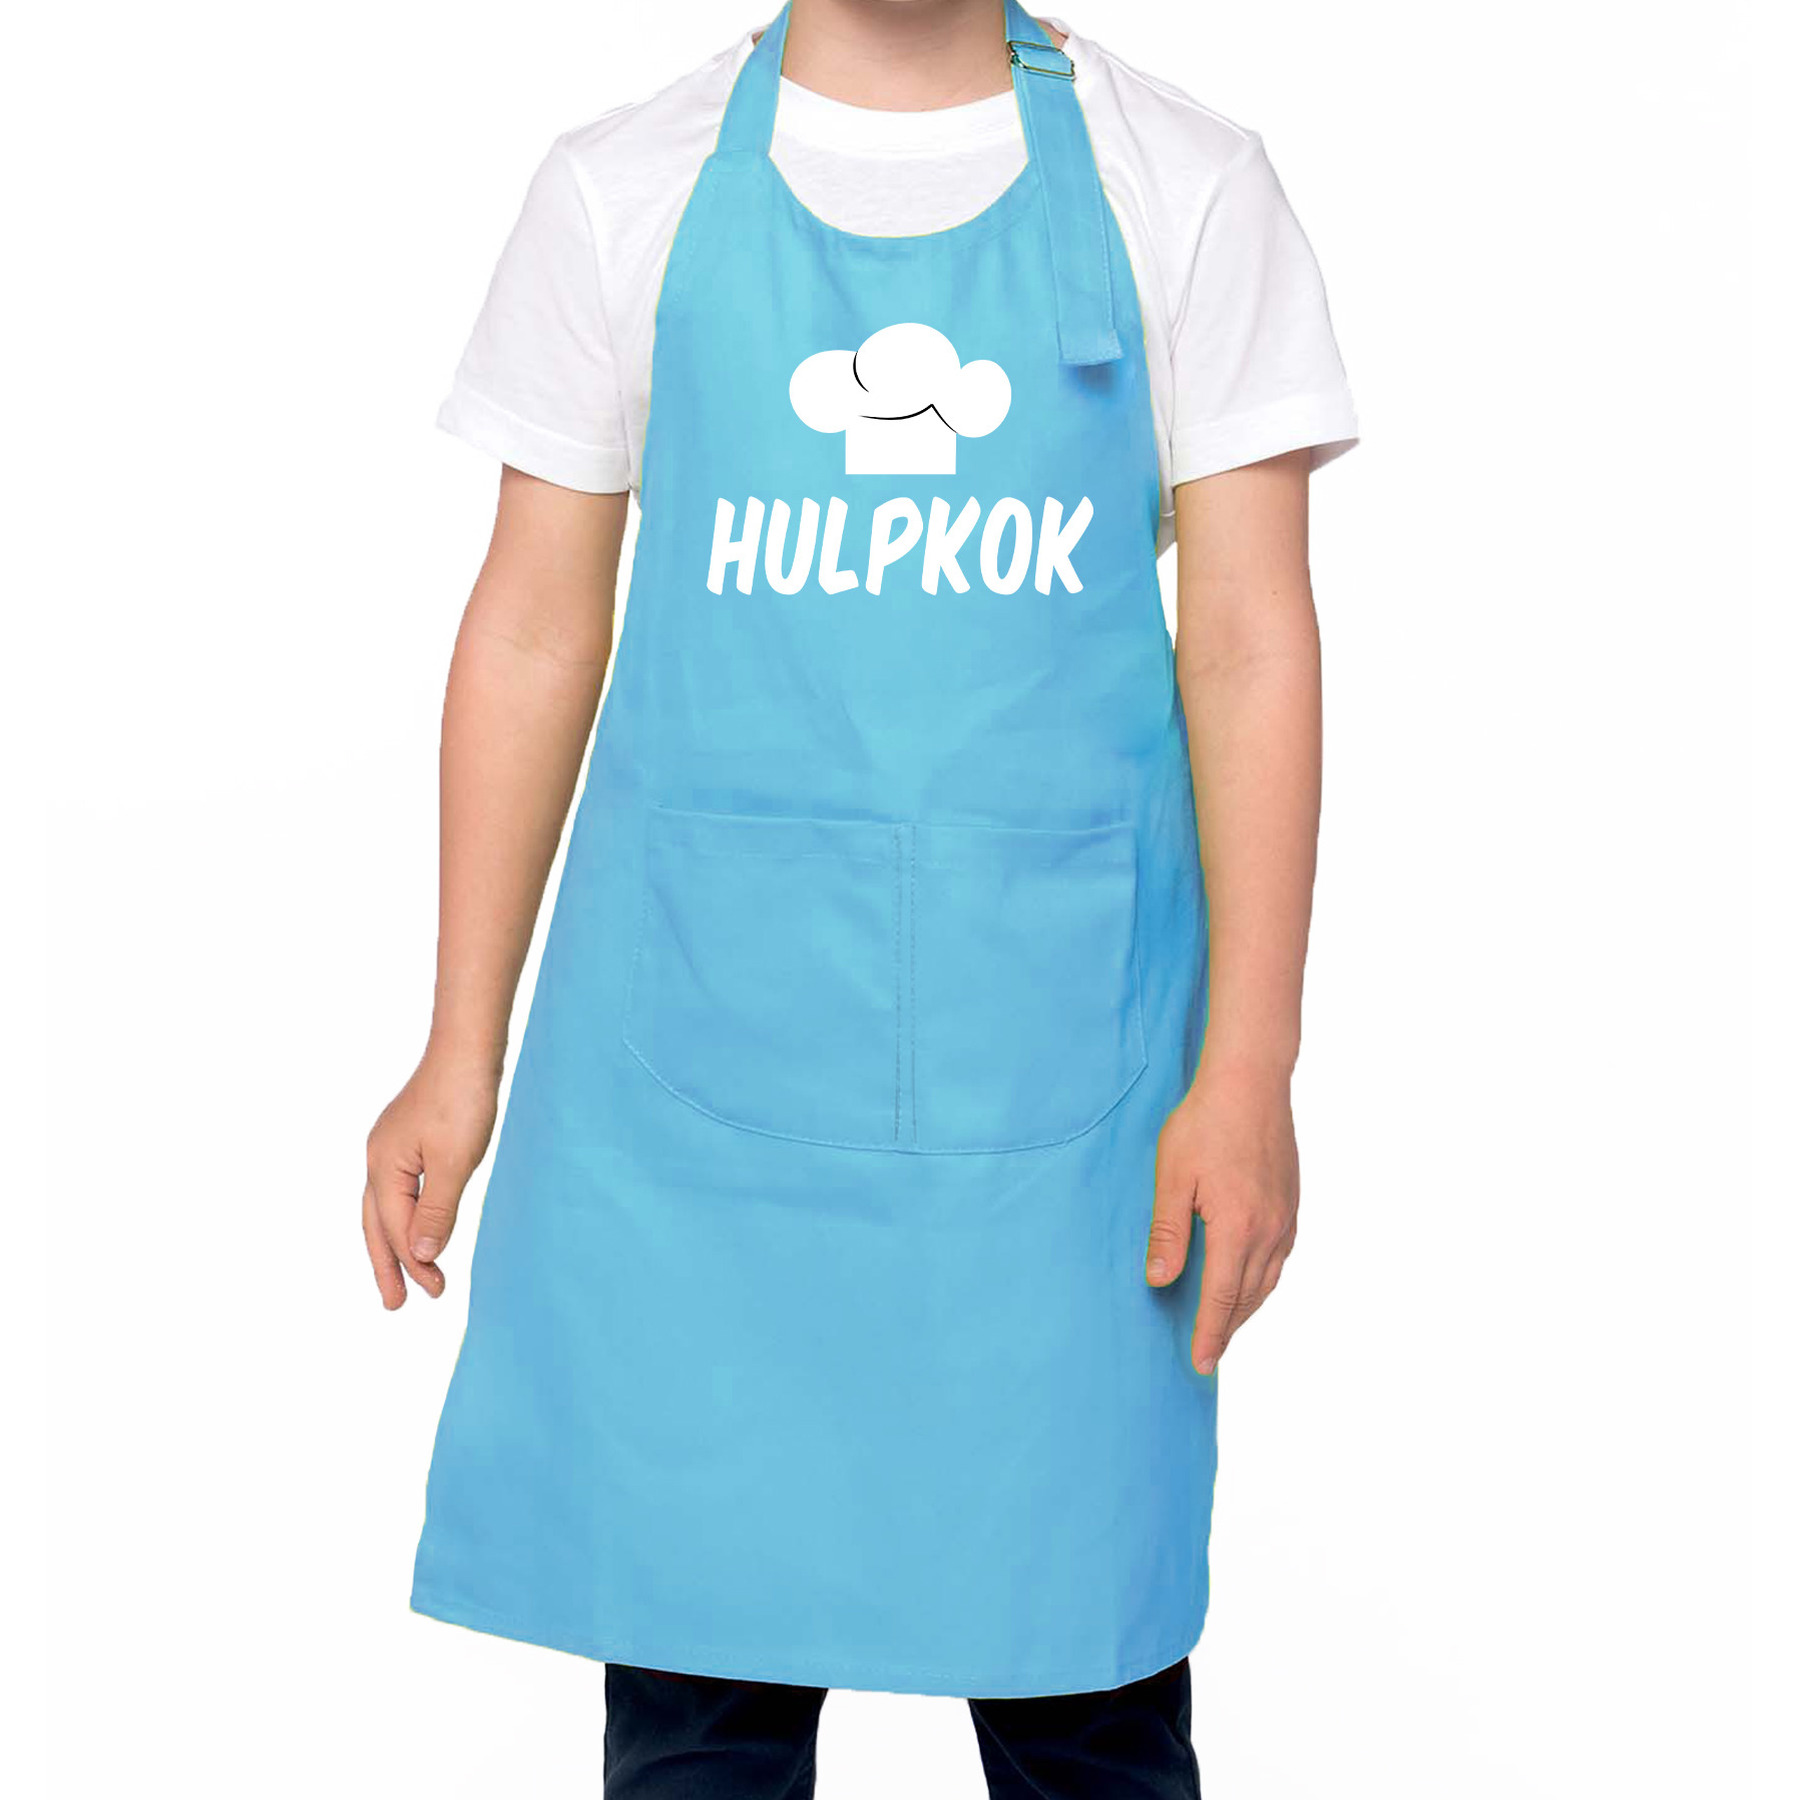 Hulpkok Keukenschort kinderen- kinder schort blauw voor jongens en meisjes